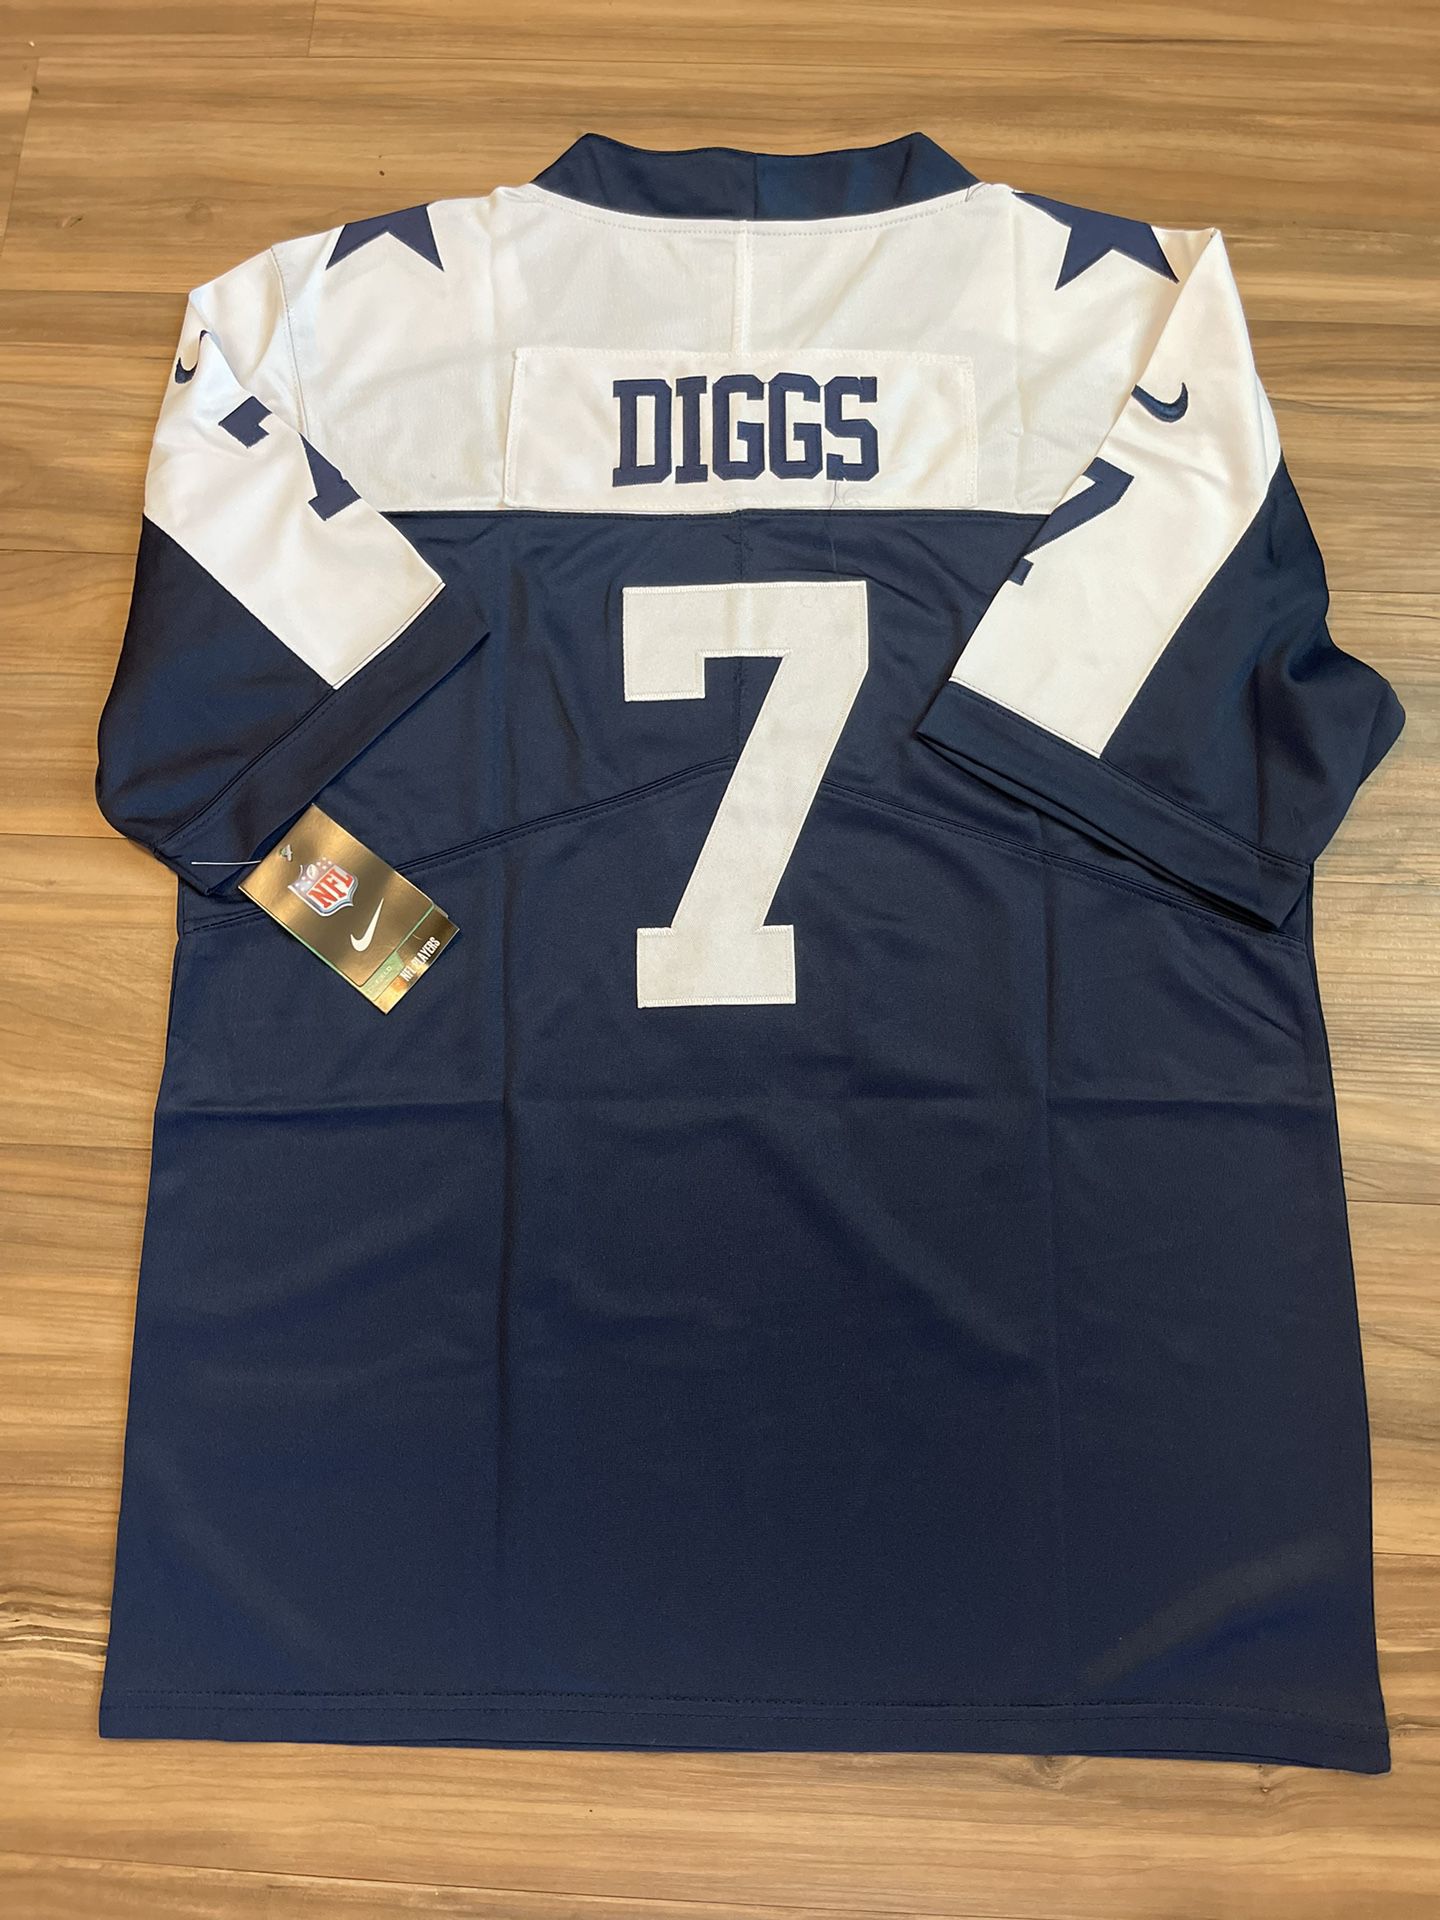 Cowboys Diggs Jersey for Sale in San Antonio, TX - OfferUp